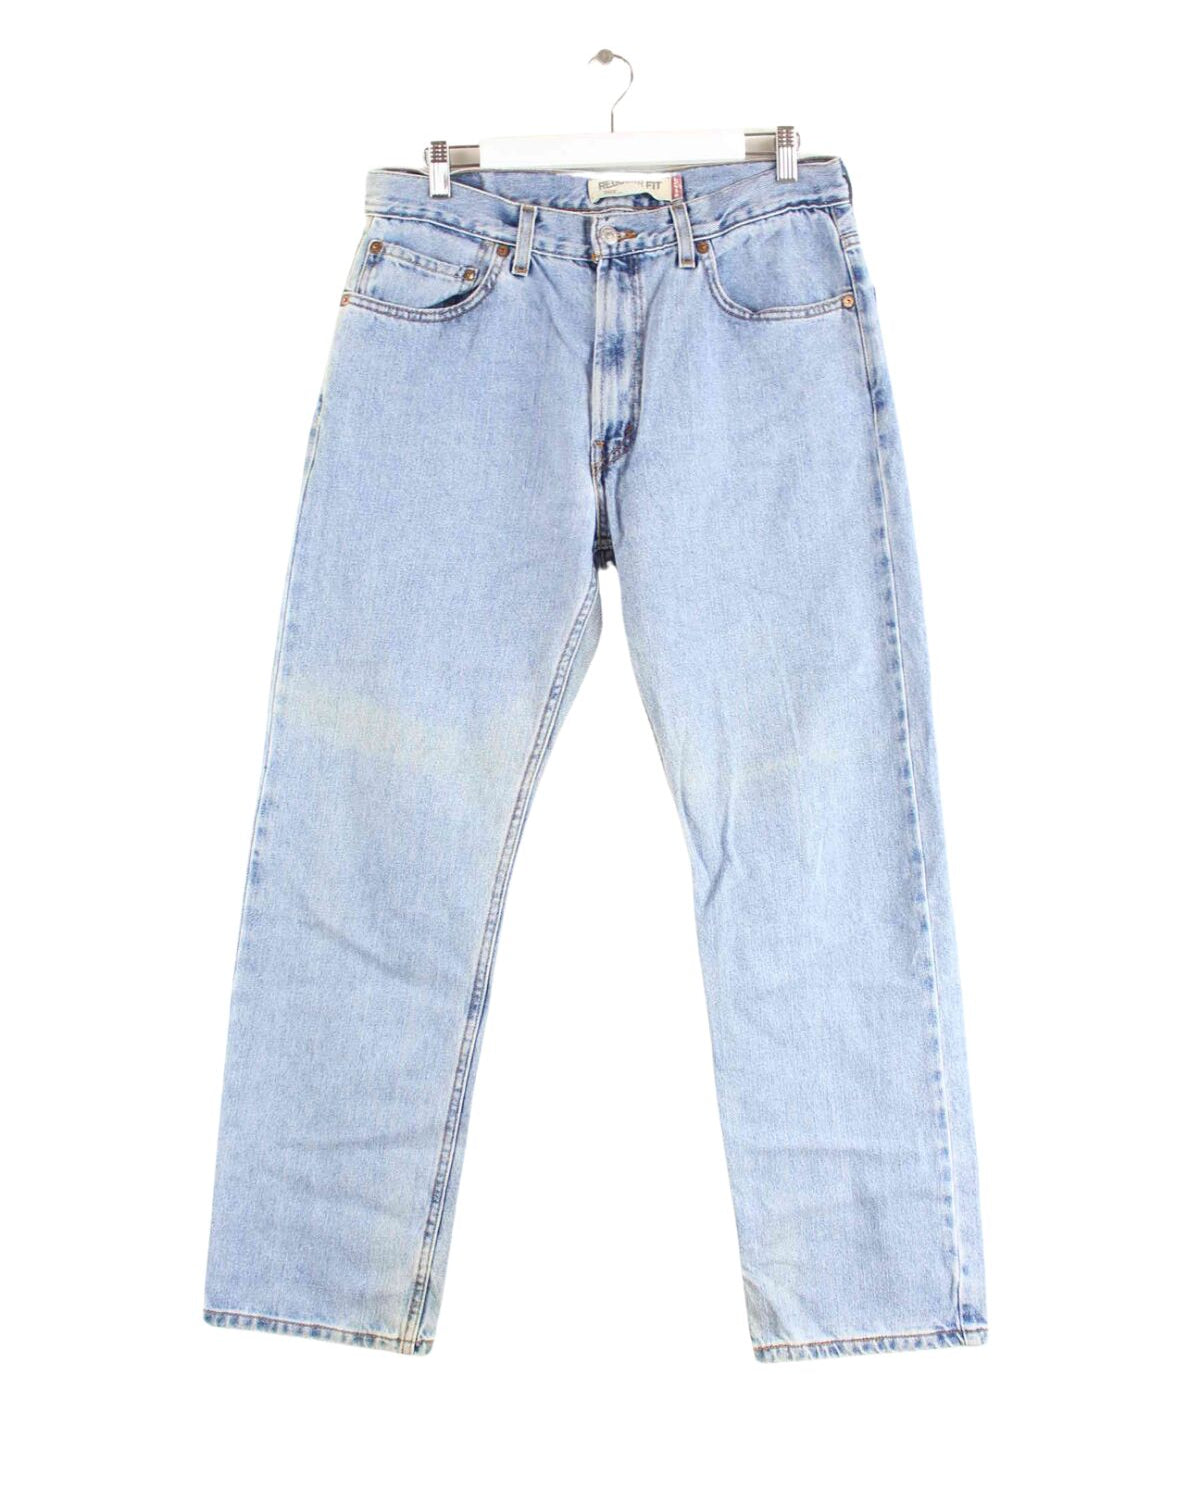 Levi's 505 Regular Fit Jeans Blau W34 L30 (front image)